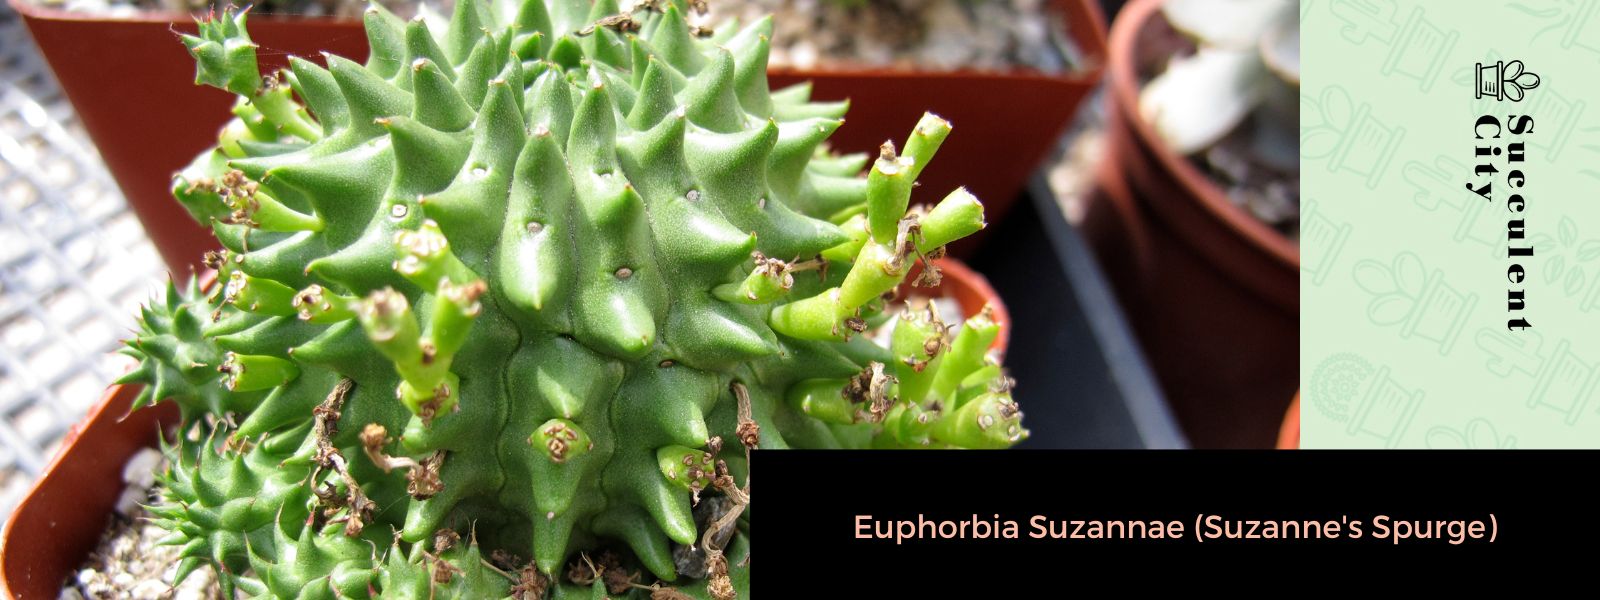 Euphorbia Suzannae (tártago de Suzanne)